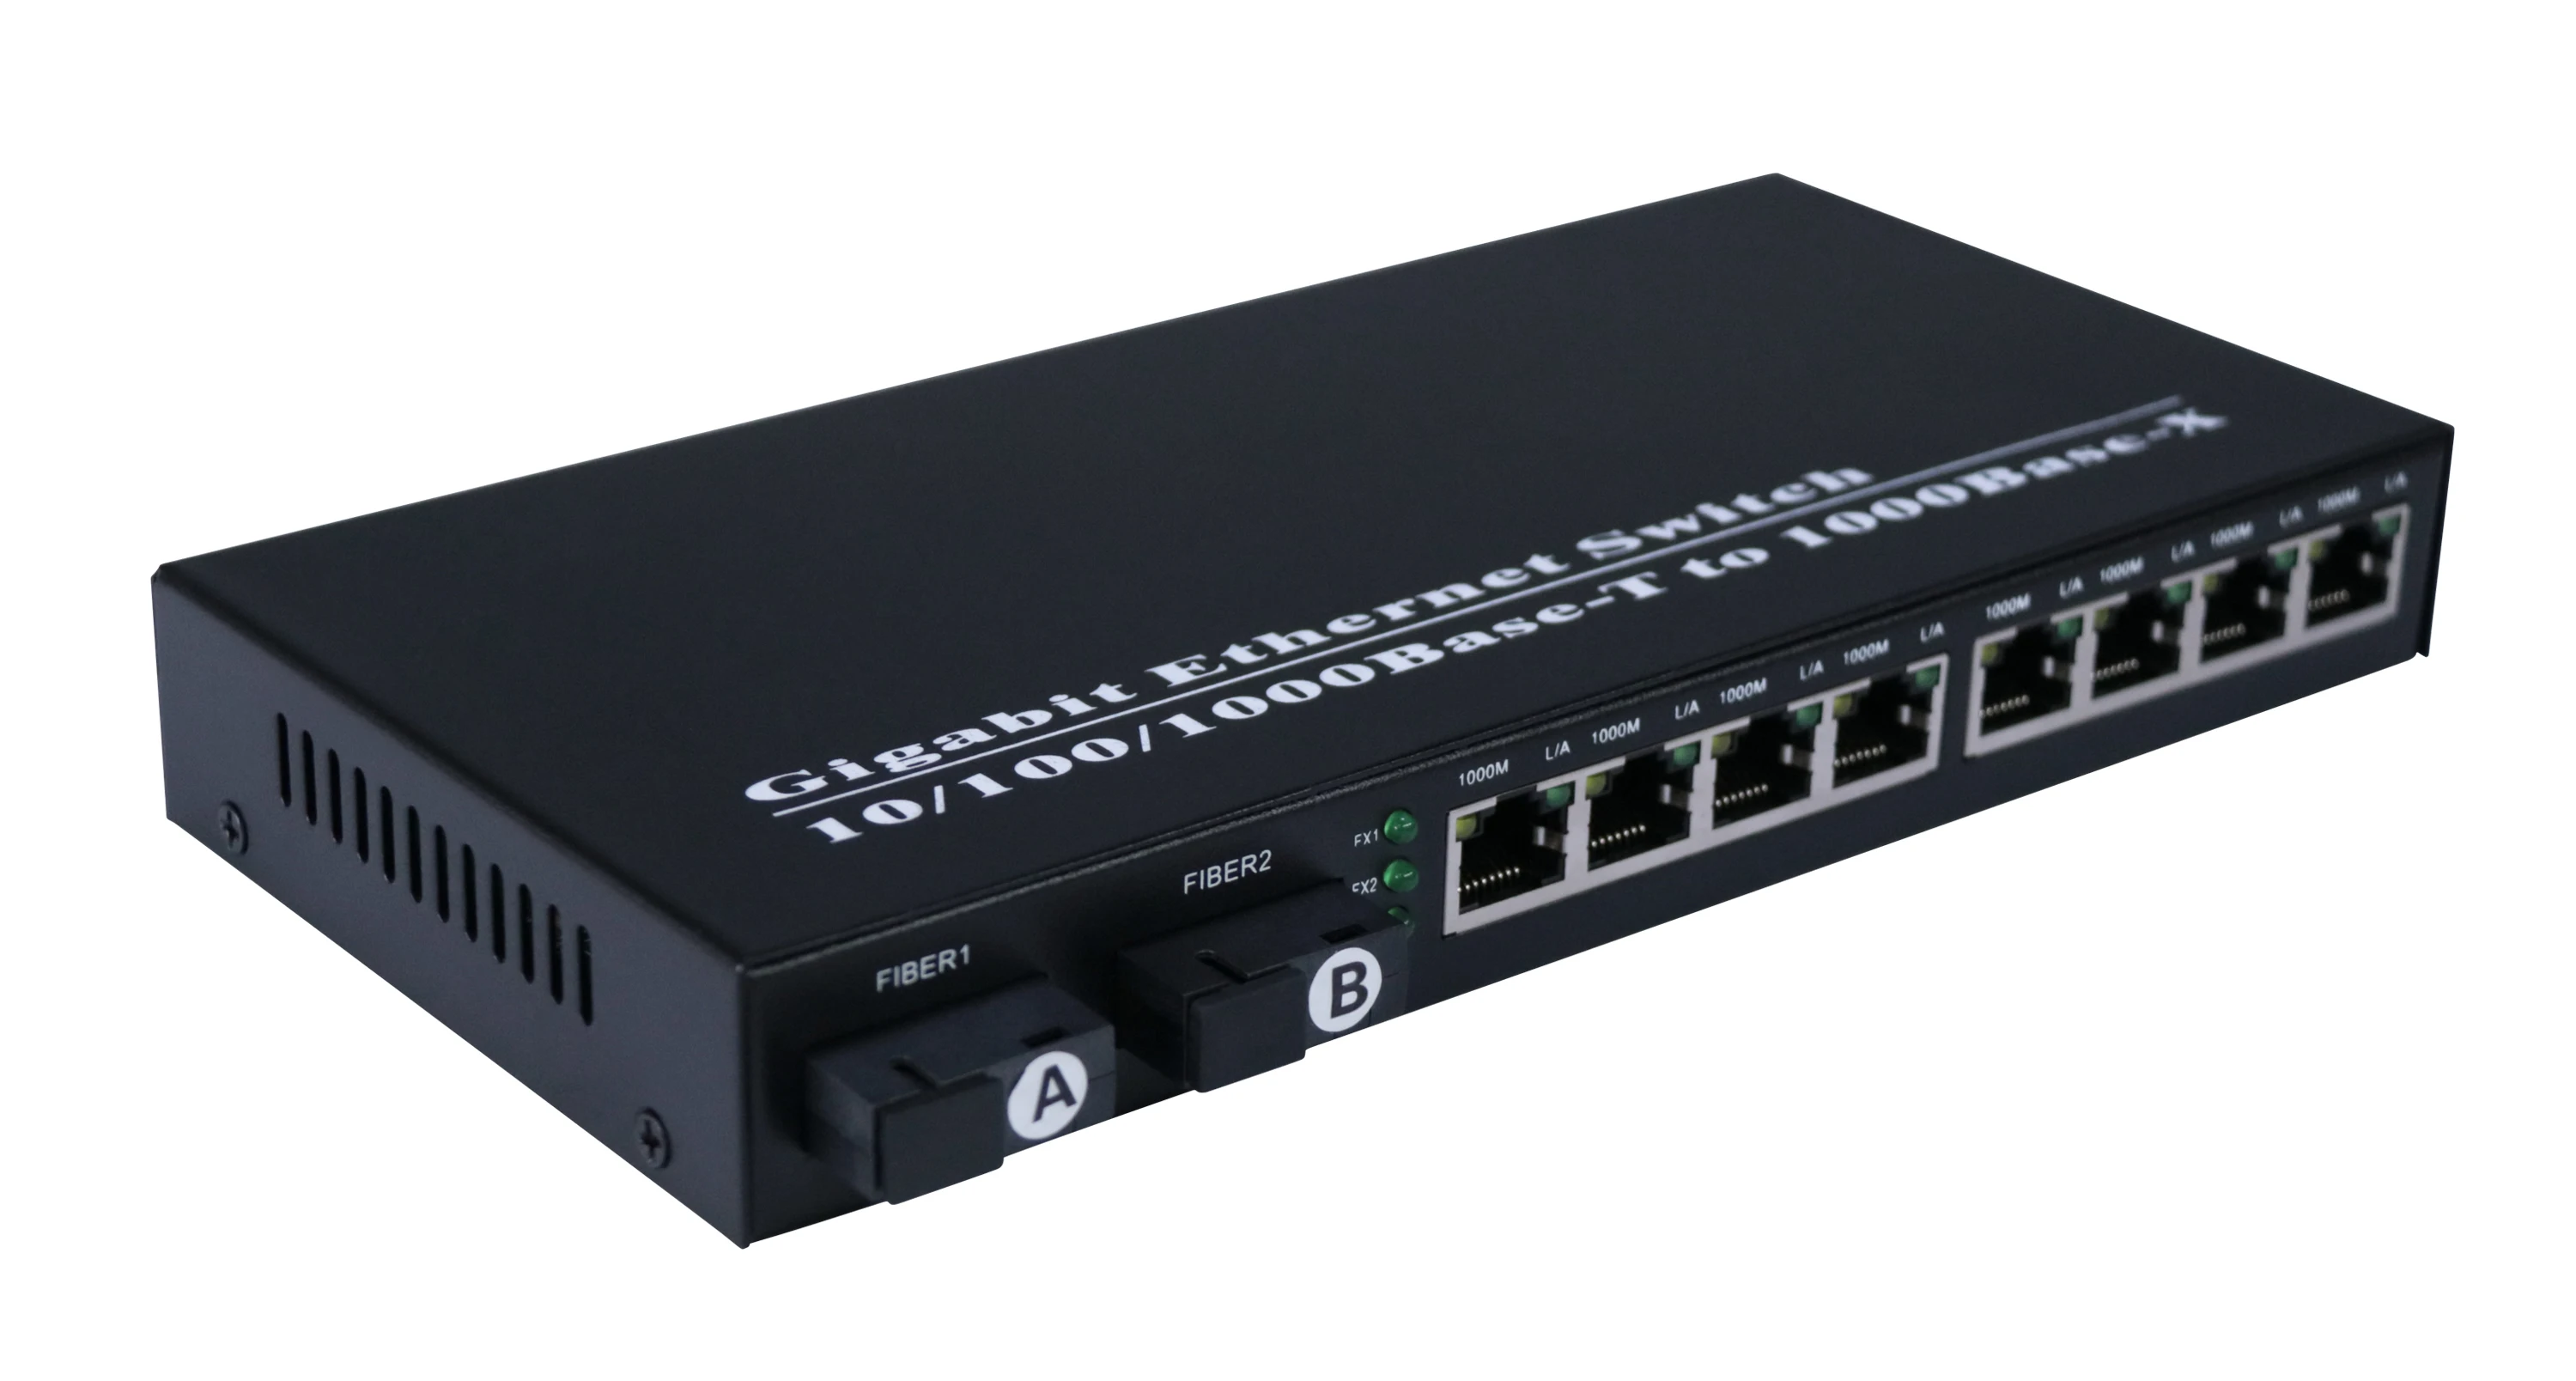 Fuld Gigabit Optisk Fiber 8 RJ45 Port 5v Networking Switch Router Udendørs Ethernet Switch